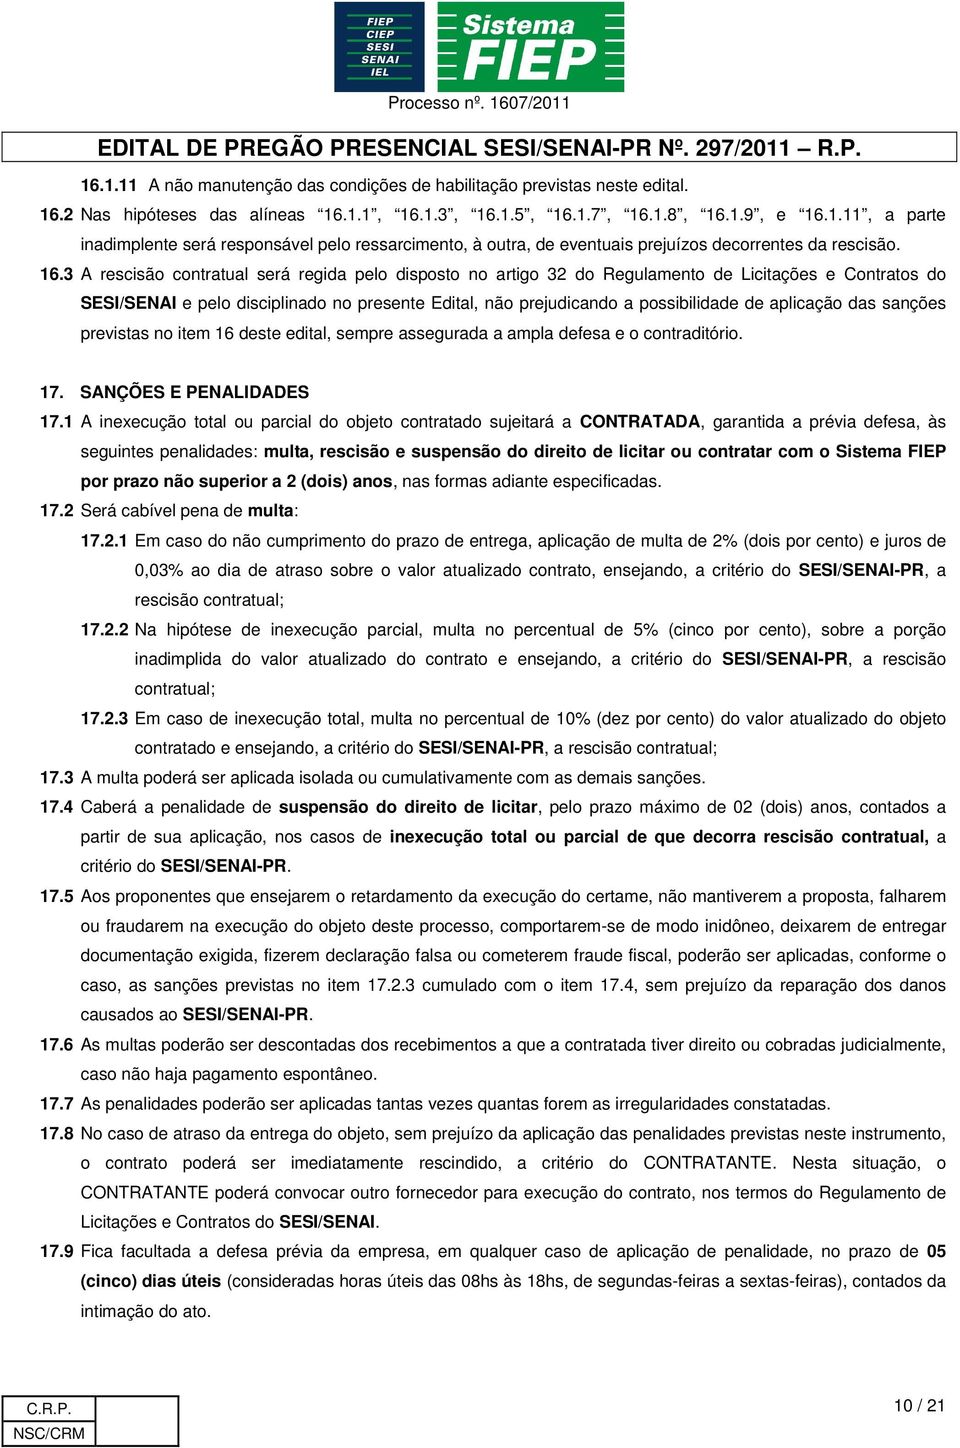 aplicação das sanções previstas no item 16 deste edital, sempre assegurada a ampla defesa e o contraditório. 17. SANÇÕES E PENALIDADES 17.